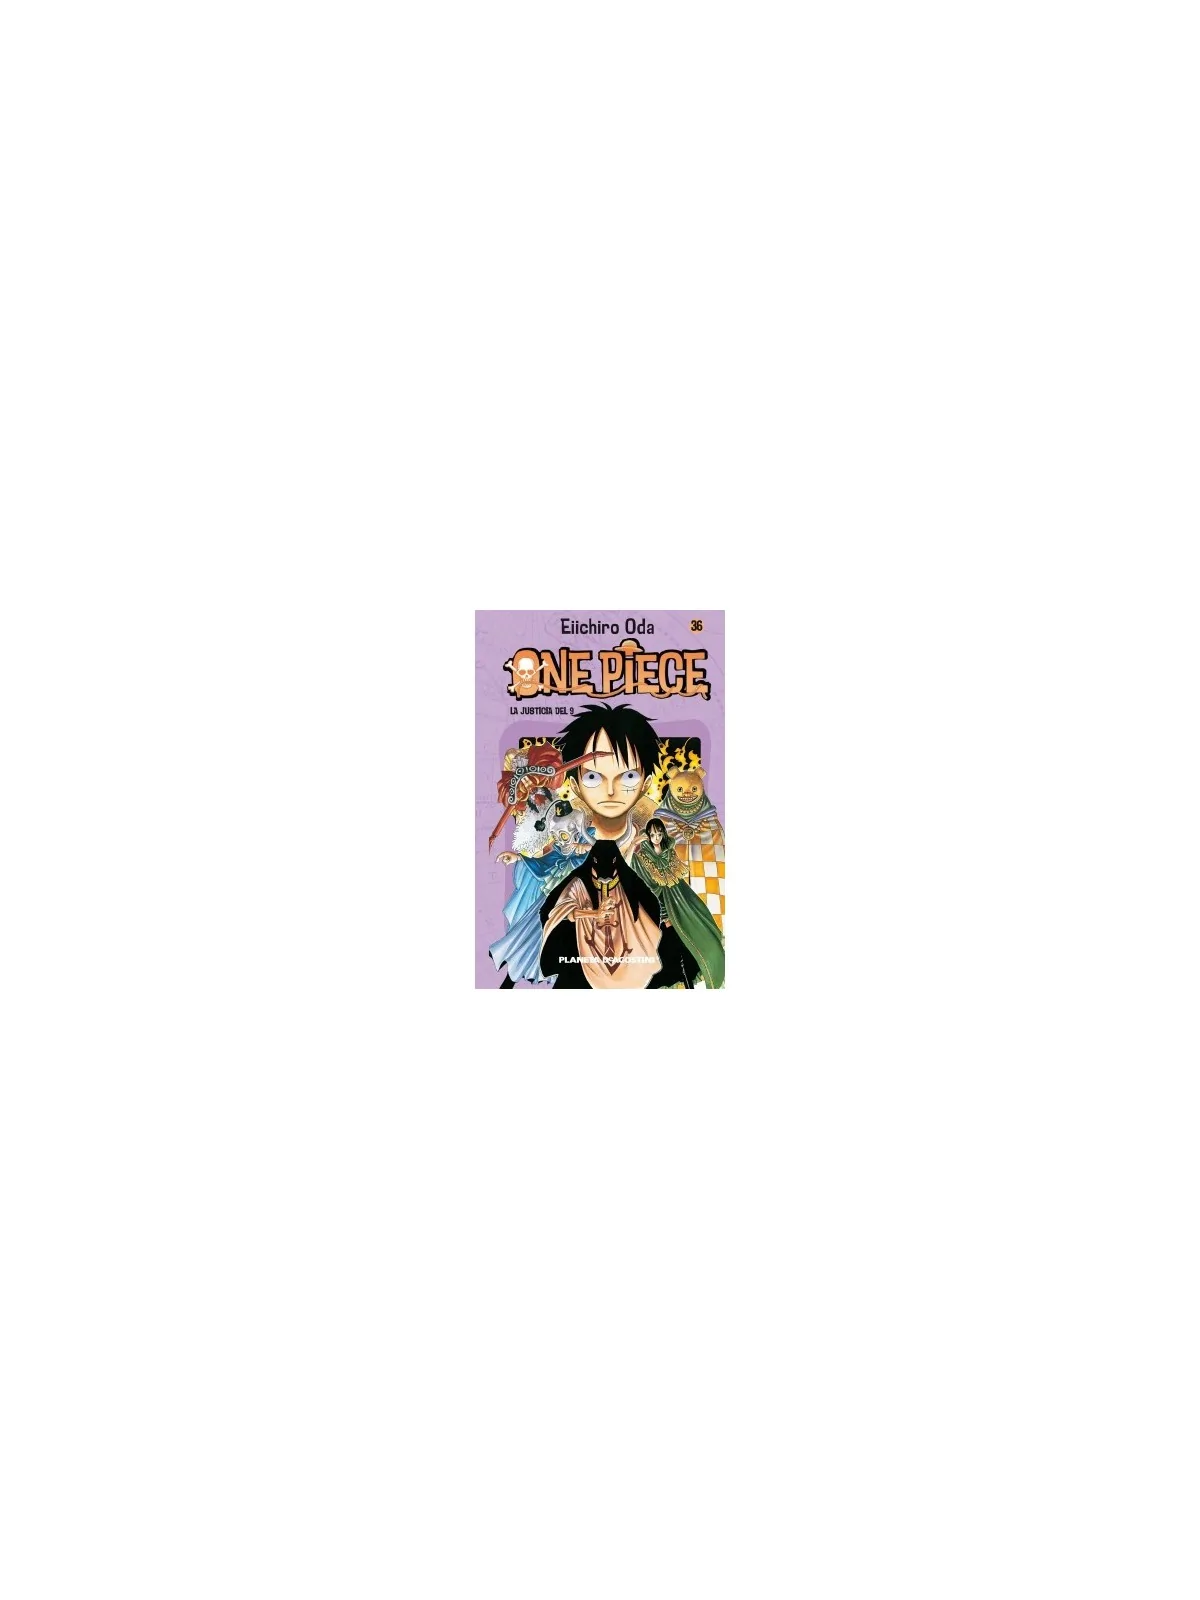 Comprar One Piece 036 barato al mejor precio 7,55 € de Planeta Comic